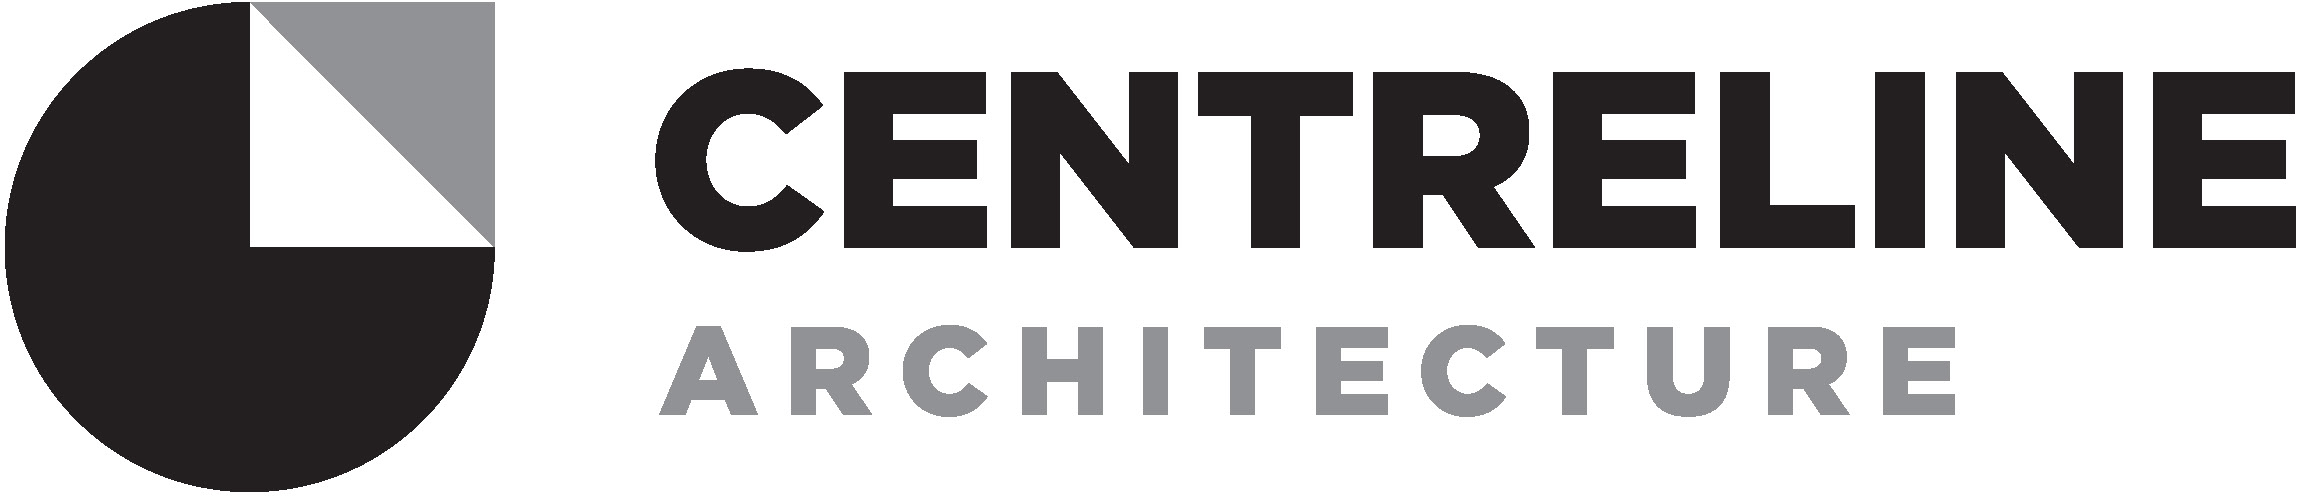 Centreline Architecture